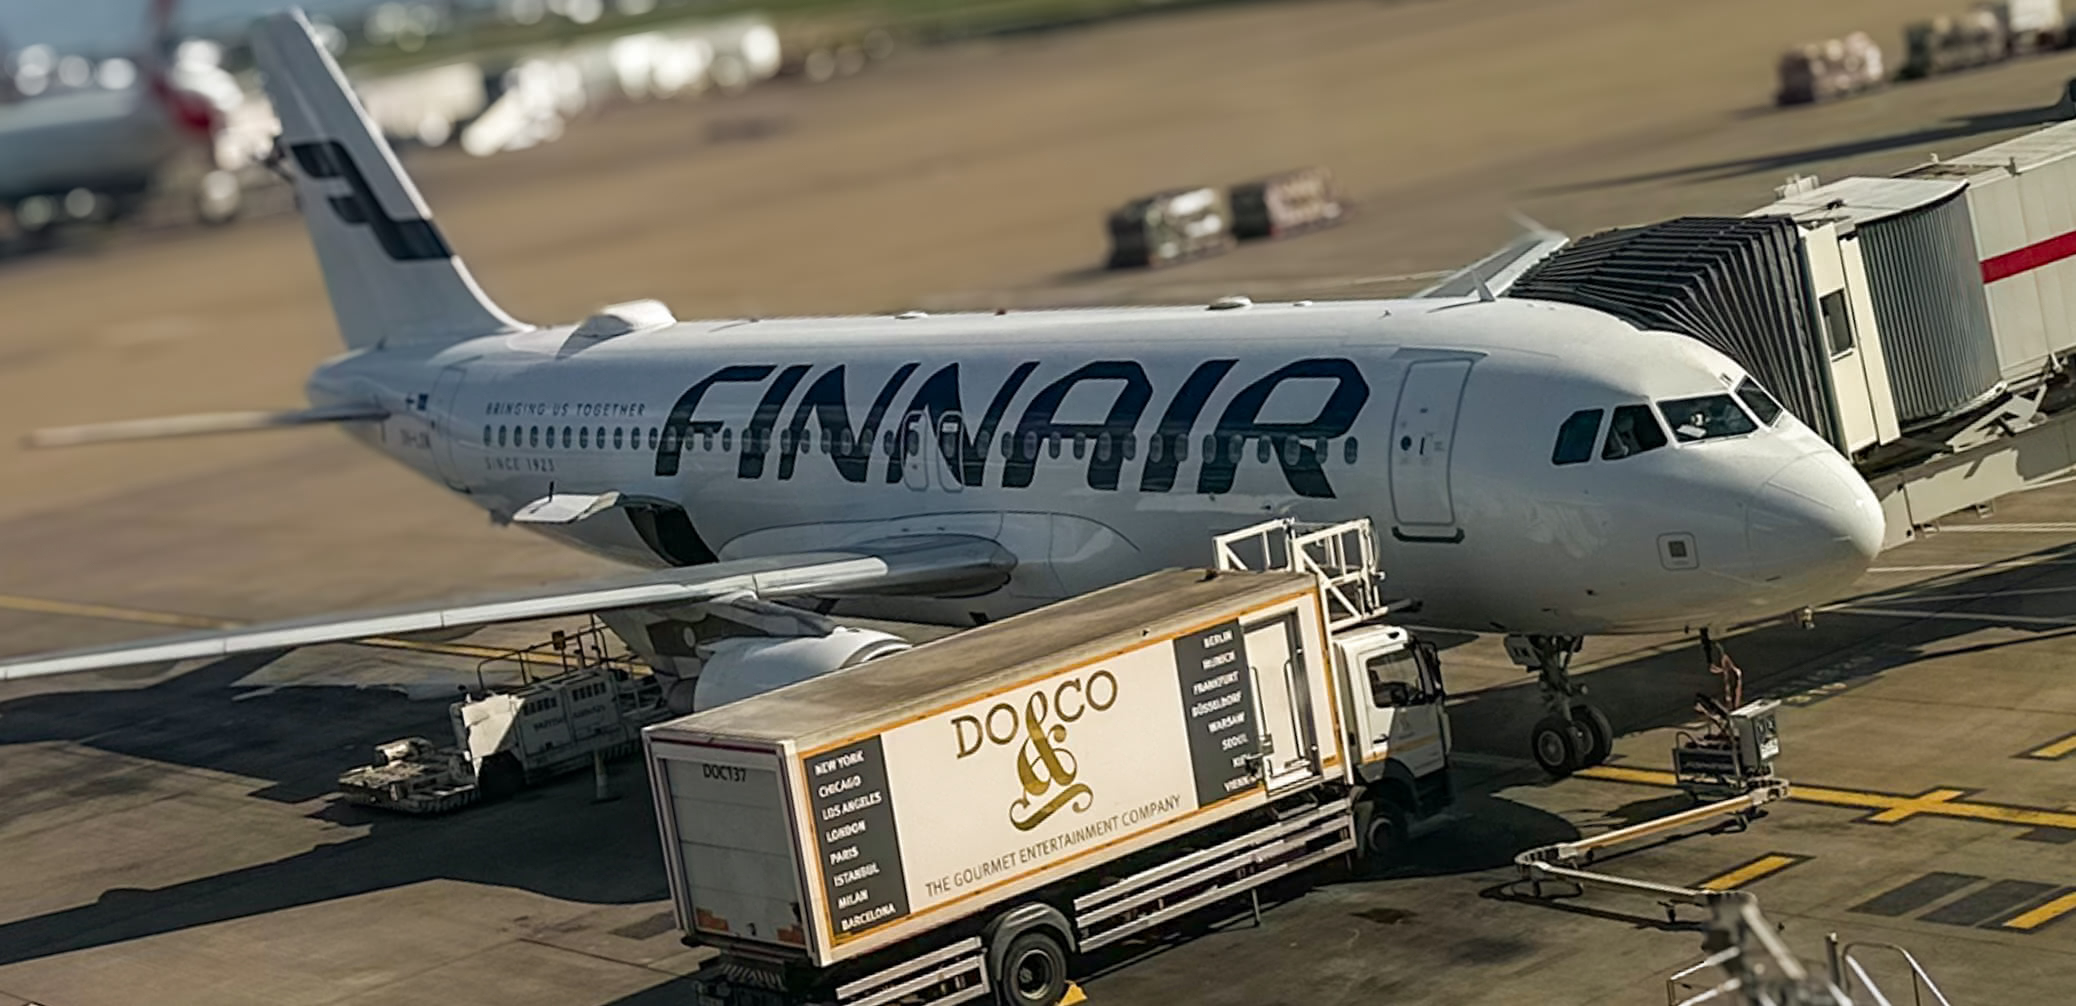 finnair-plane